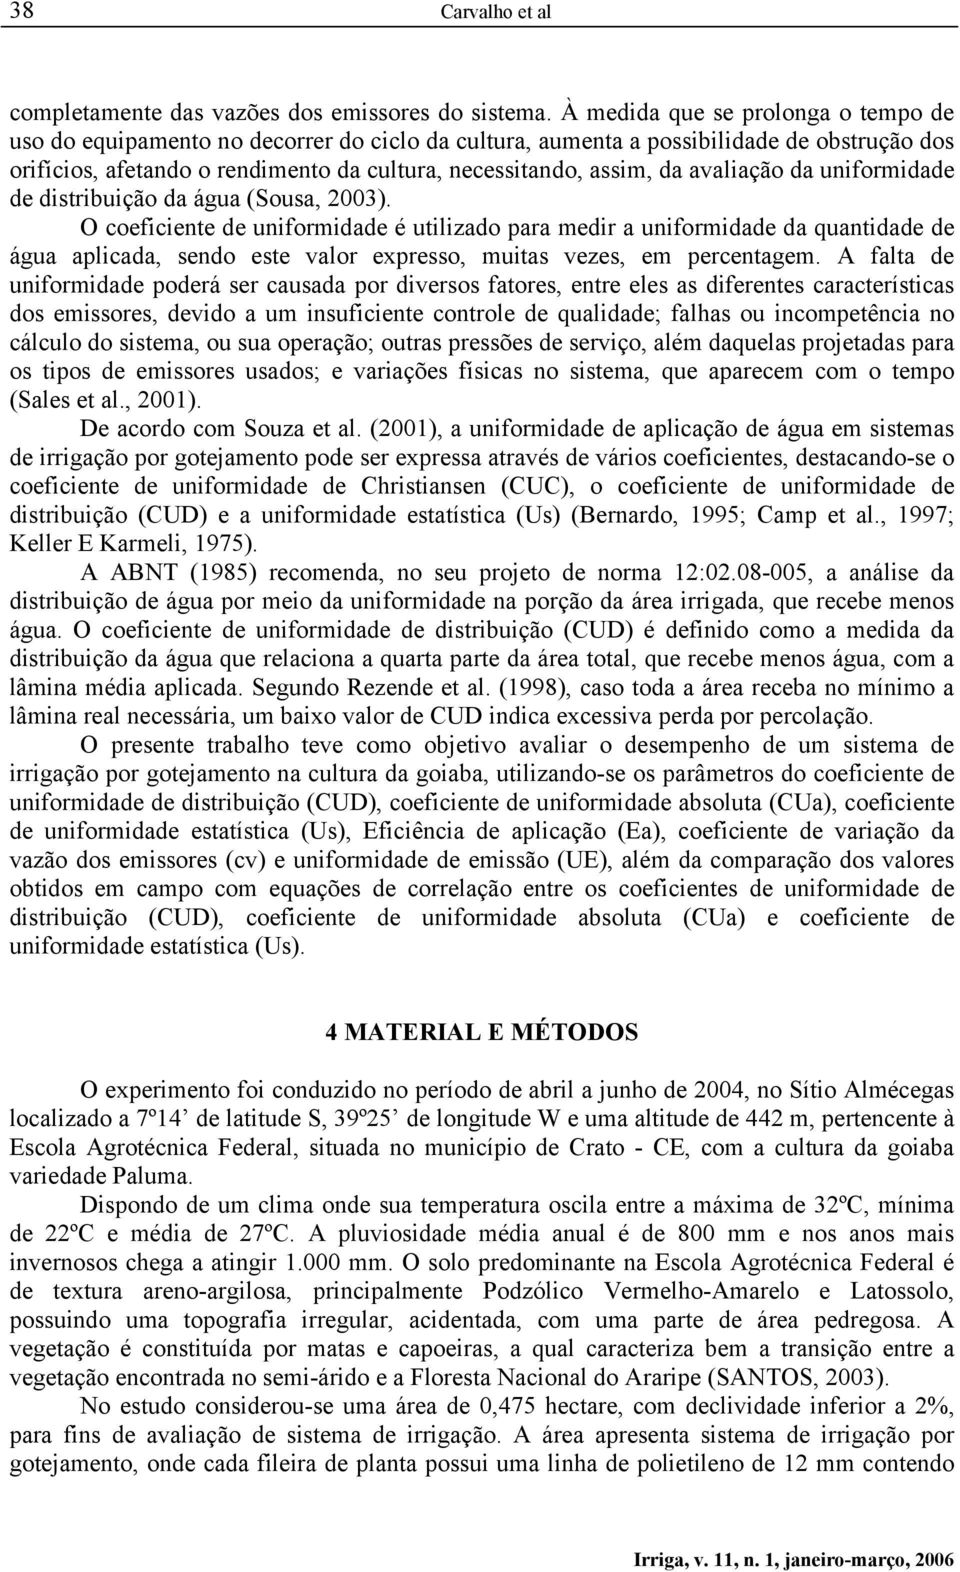 avaliação da uniformidade de distribuição da água (Sousa, 2003).